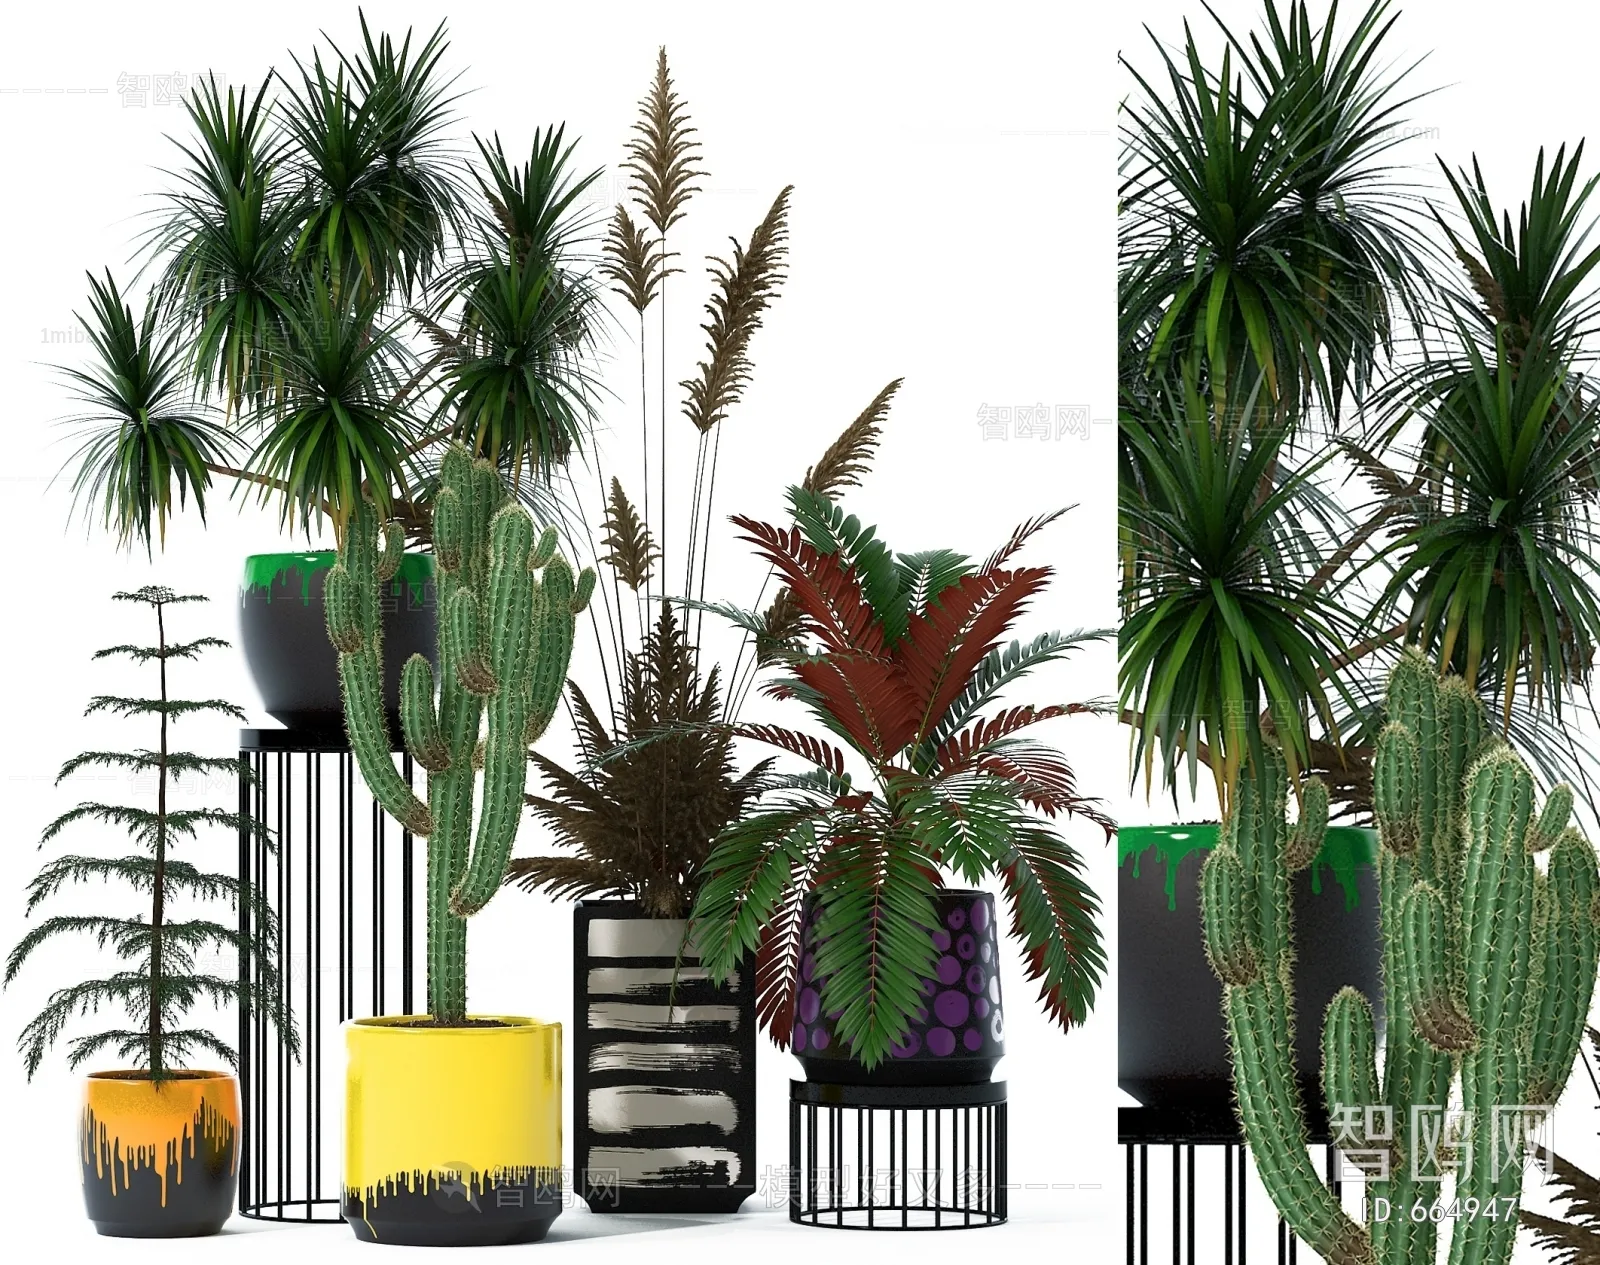 PLANT 3D MODELS – 016